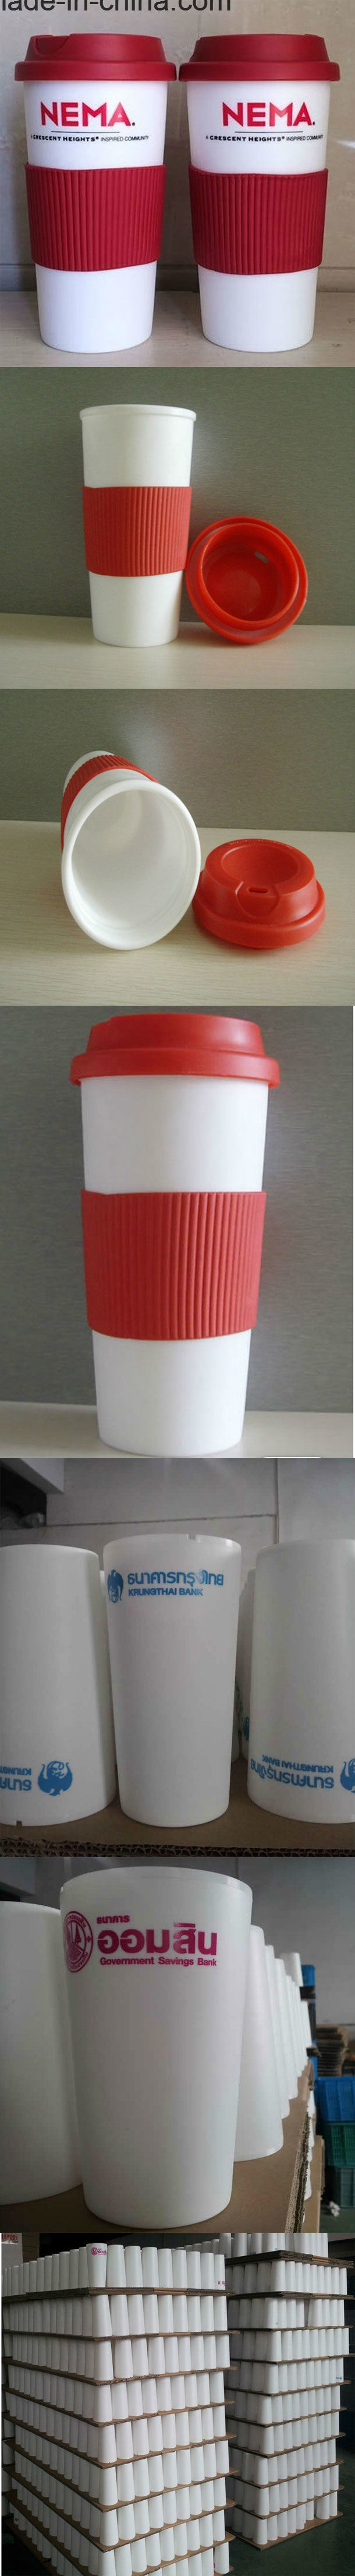 Free Sample Avaliable 500ml 18oz Eco-Friendly Plastic Coffee Mug